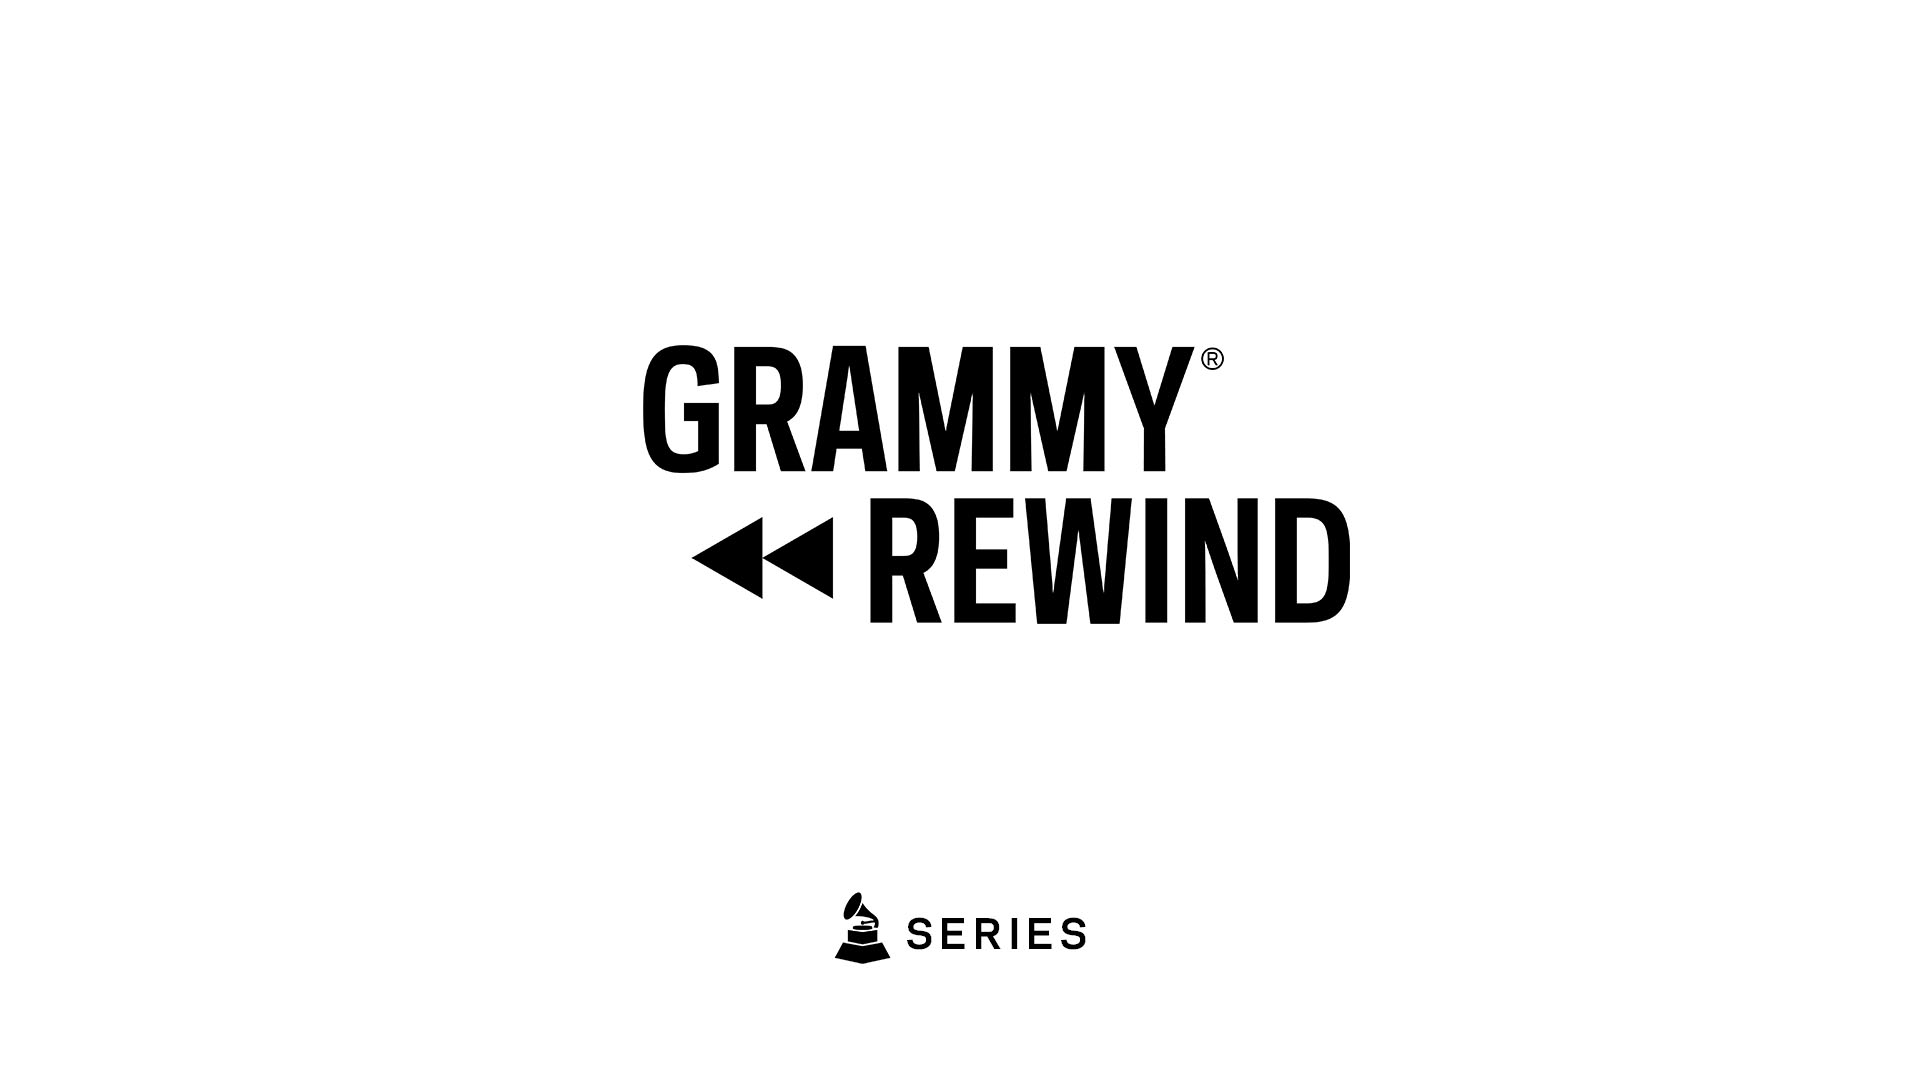 Watch Eminem Show Love to Detroit And Rihanna During Best Rap Album Win In 2011 | GRAMMY Rewind